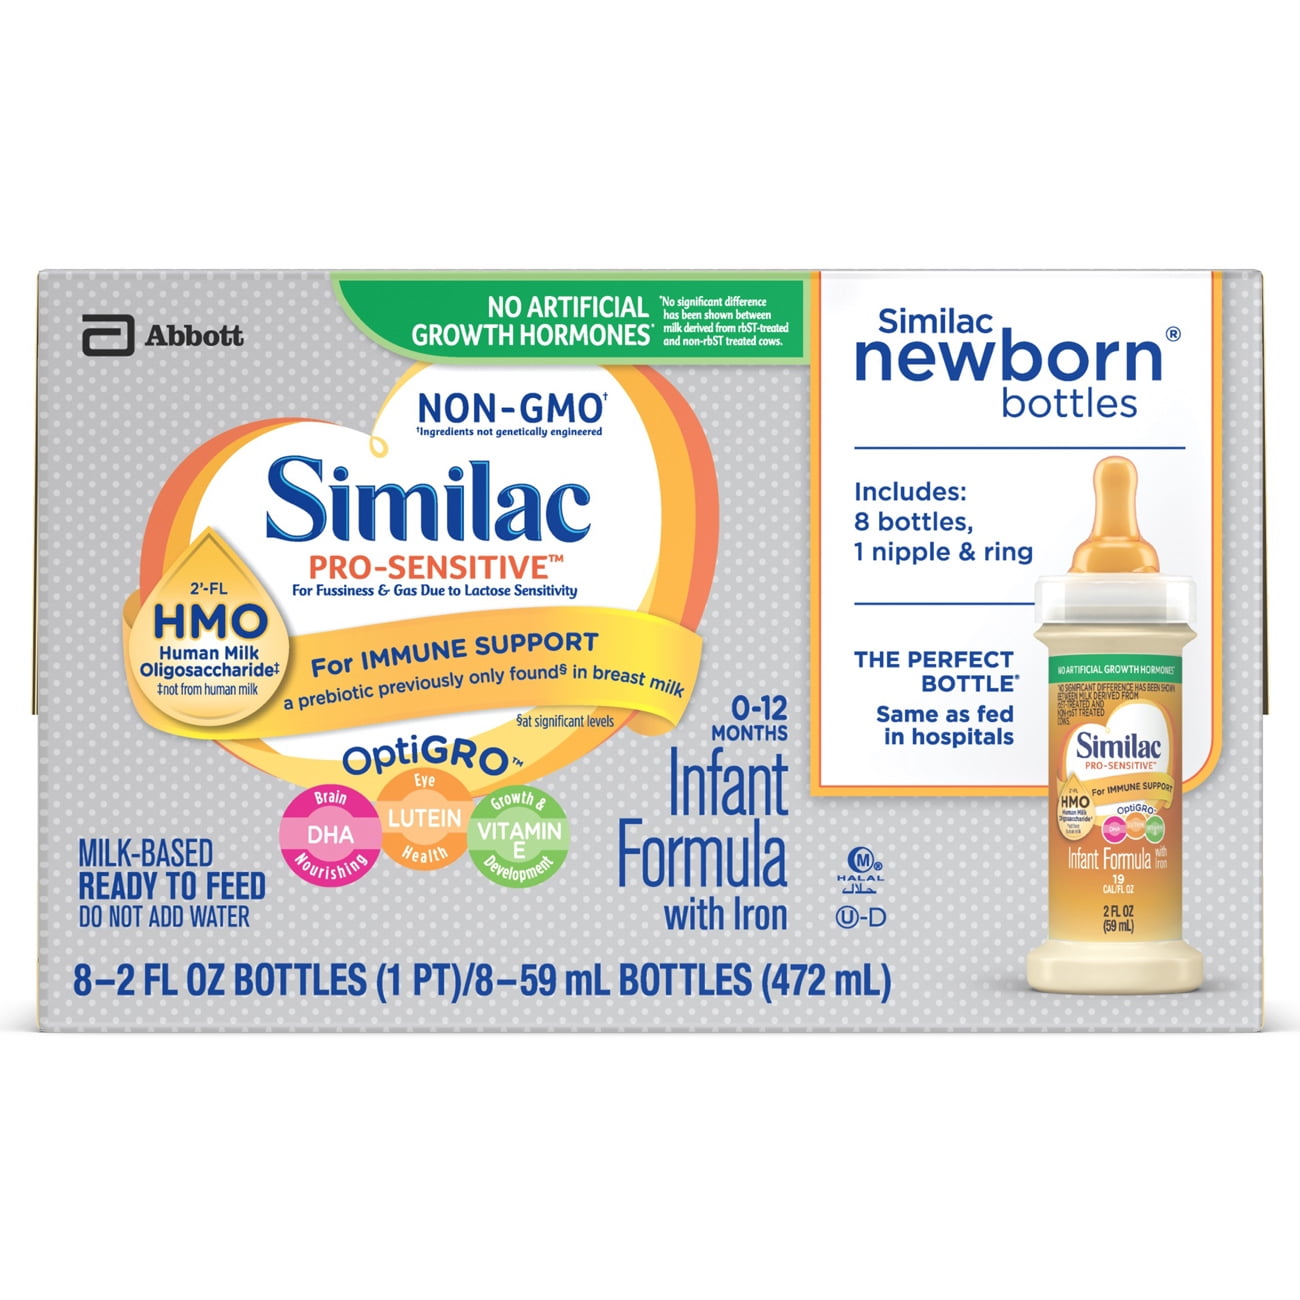 Similac Pro-Sensitive Non-GMO with 2 